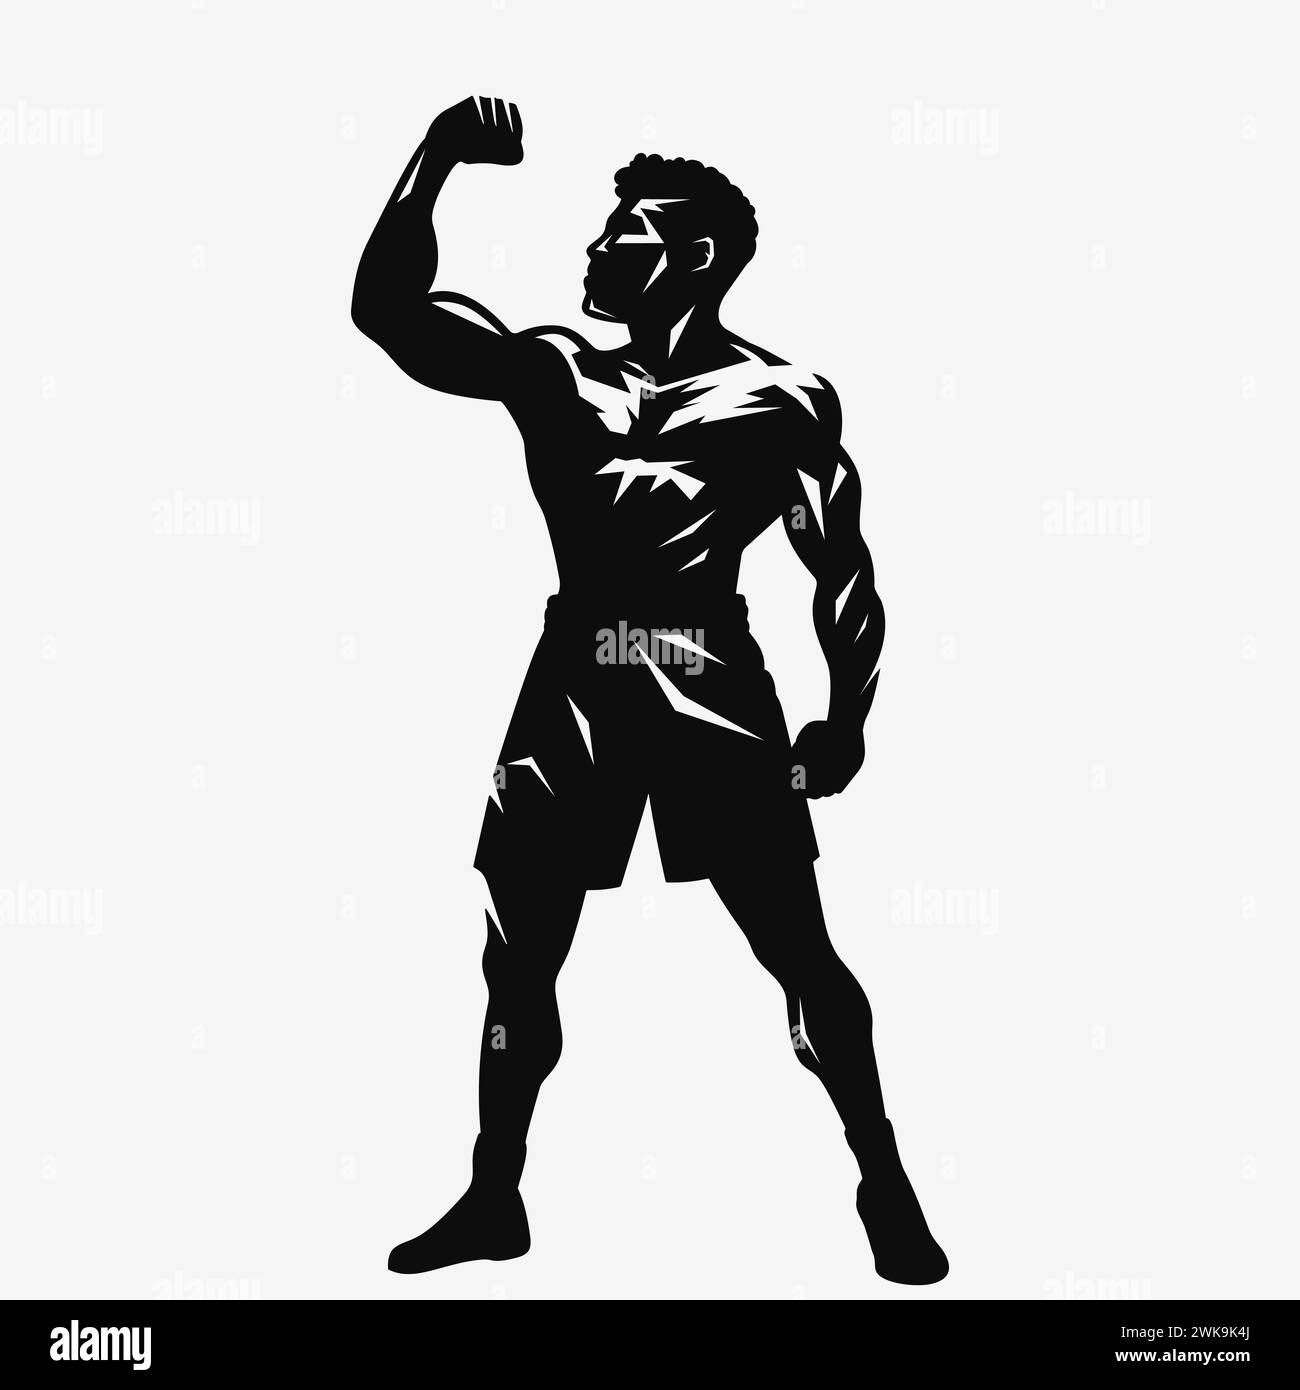 Boxing logo. Black silhouette. Vector illustration EPS10 Stock Vector